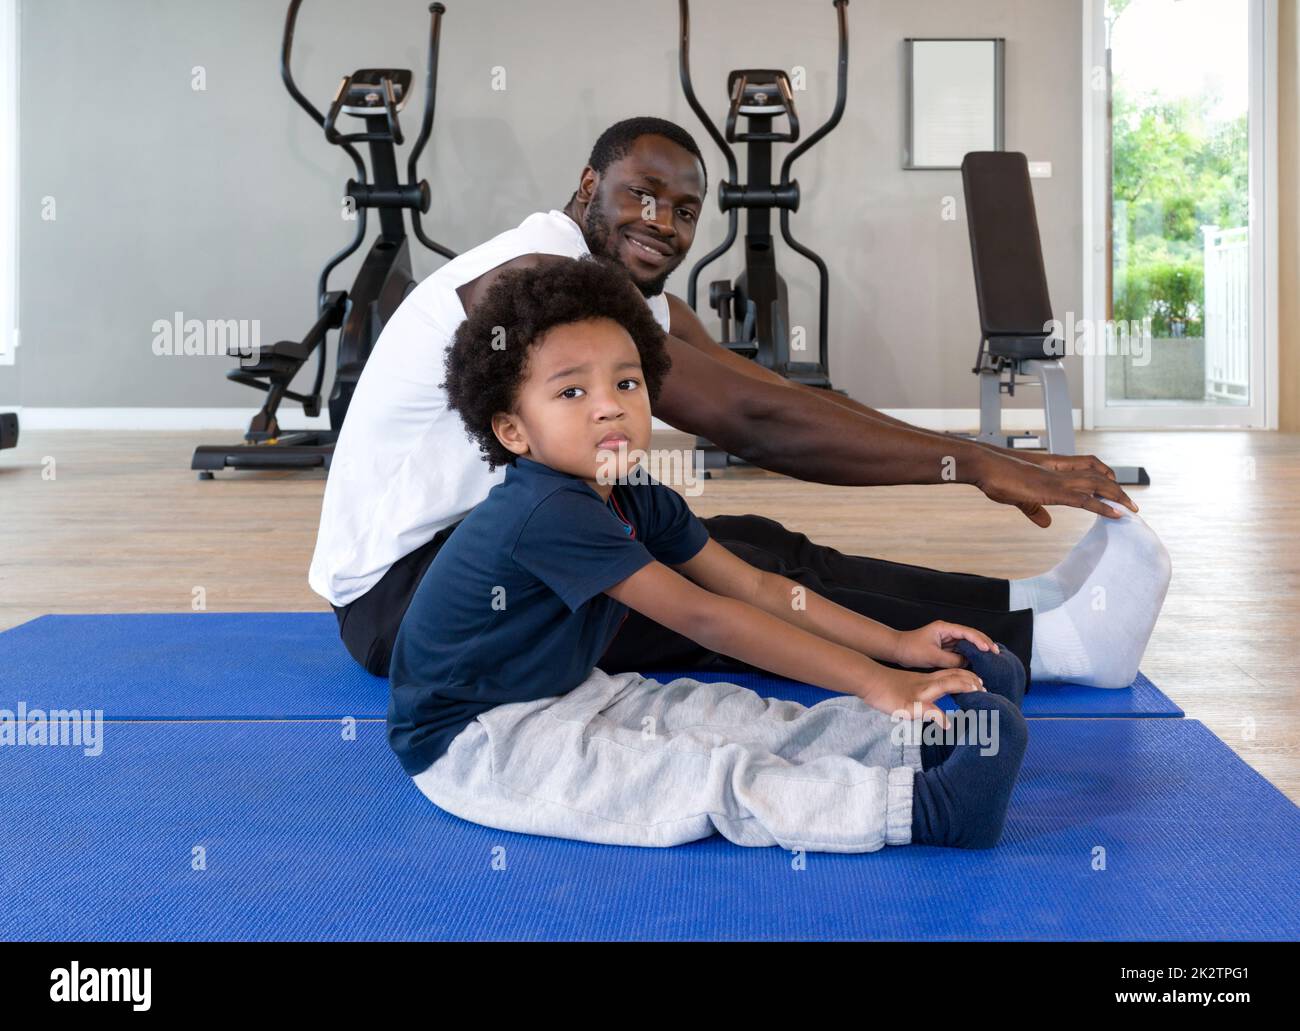 Jeune garçon de cheveux noir bouclés s'étirant avec son père après avoir terminé la routine d'exercice sur le tapis de yoga. Des appareils de cardio-training sont à l'arrière-plan à la salle de gym. Banque D'Images